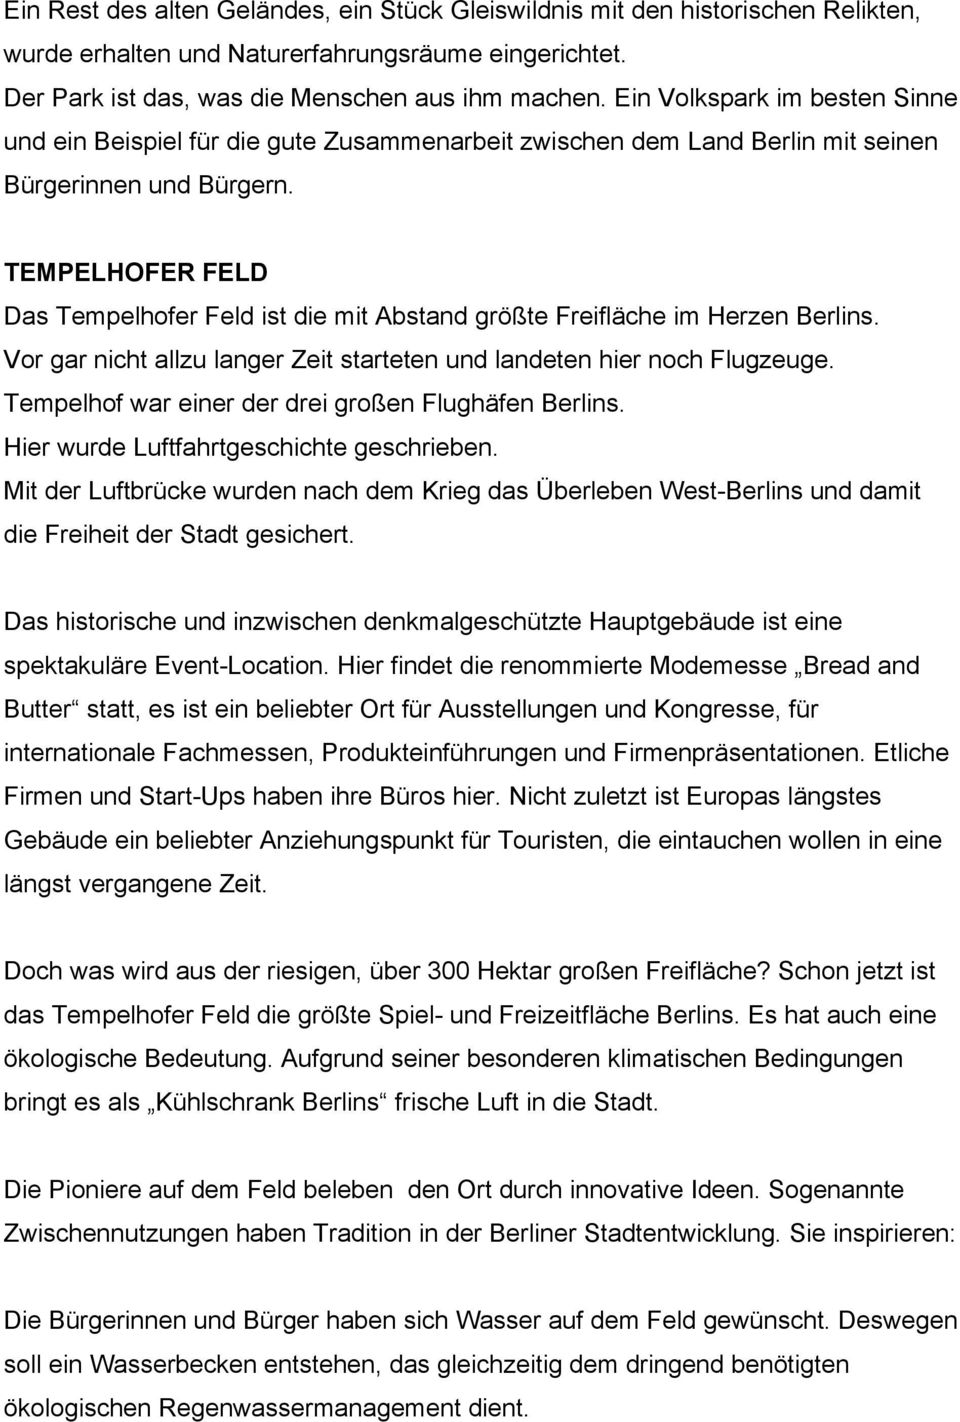 TEMPELHOFER FELD Das Tempelhofer Feld ist die mit Abstand größte Freifläche im Herzen Berlins. Vor gar nicht allzu langer Zeit starteten und landeten hier noch Flugzeuge.